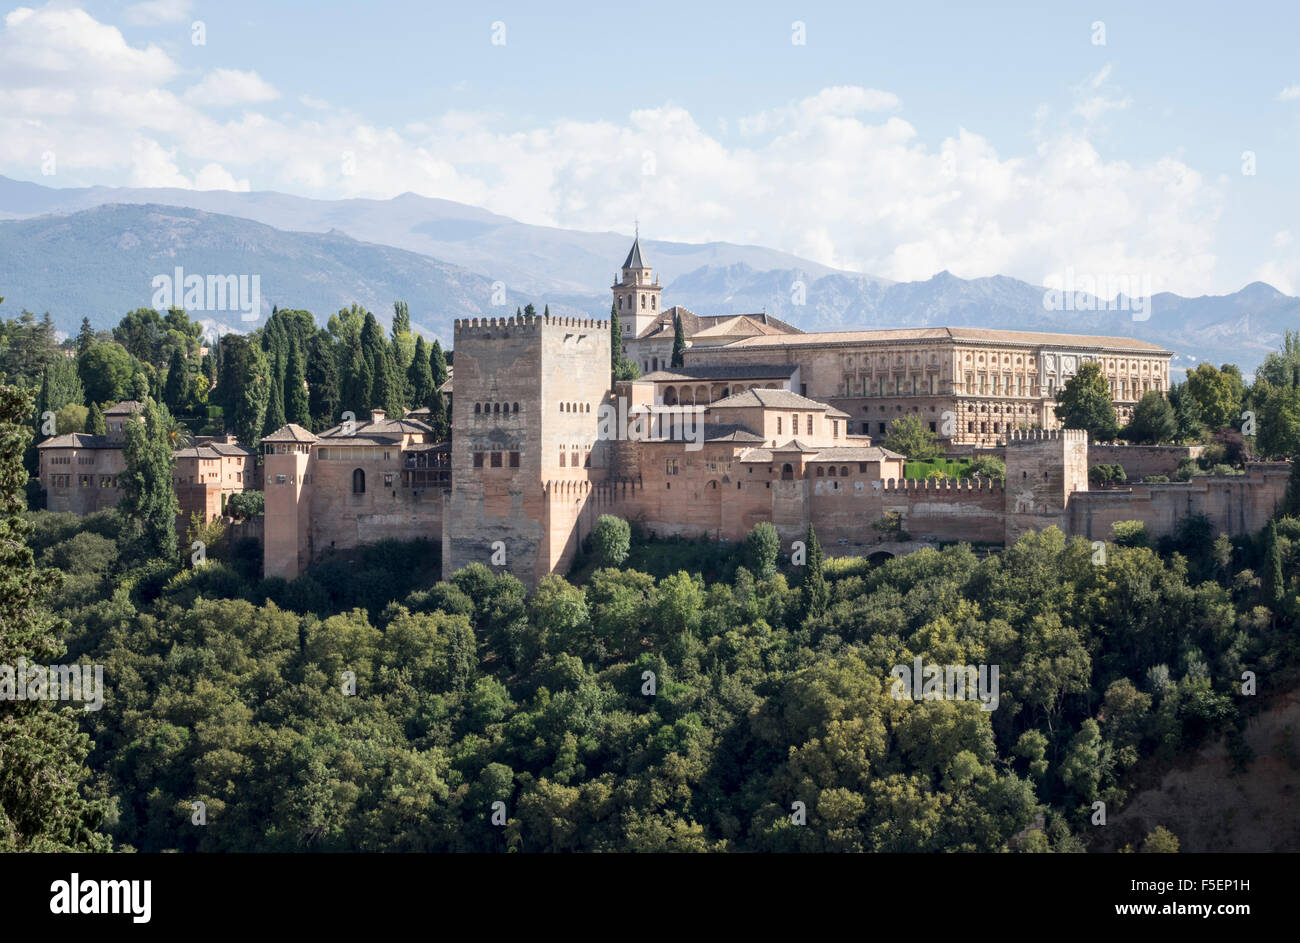 Alhambra-Palast in Granada, Spanien Stockfoto